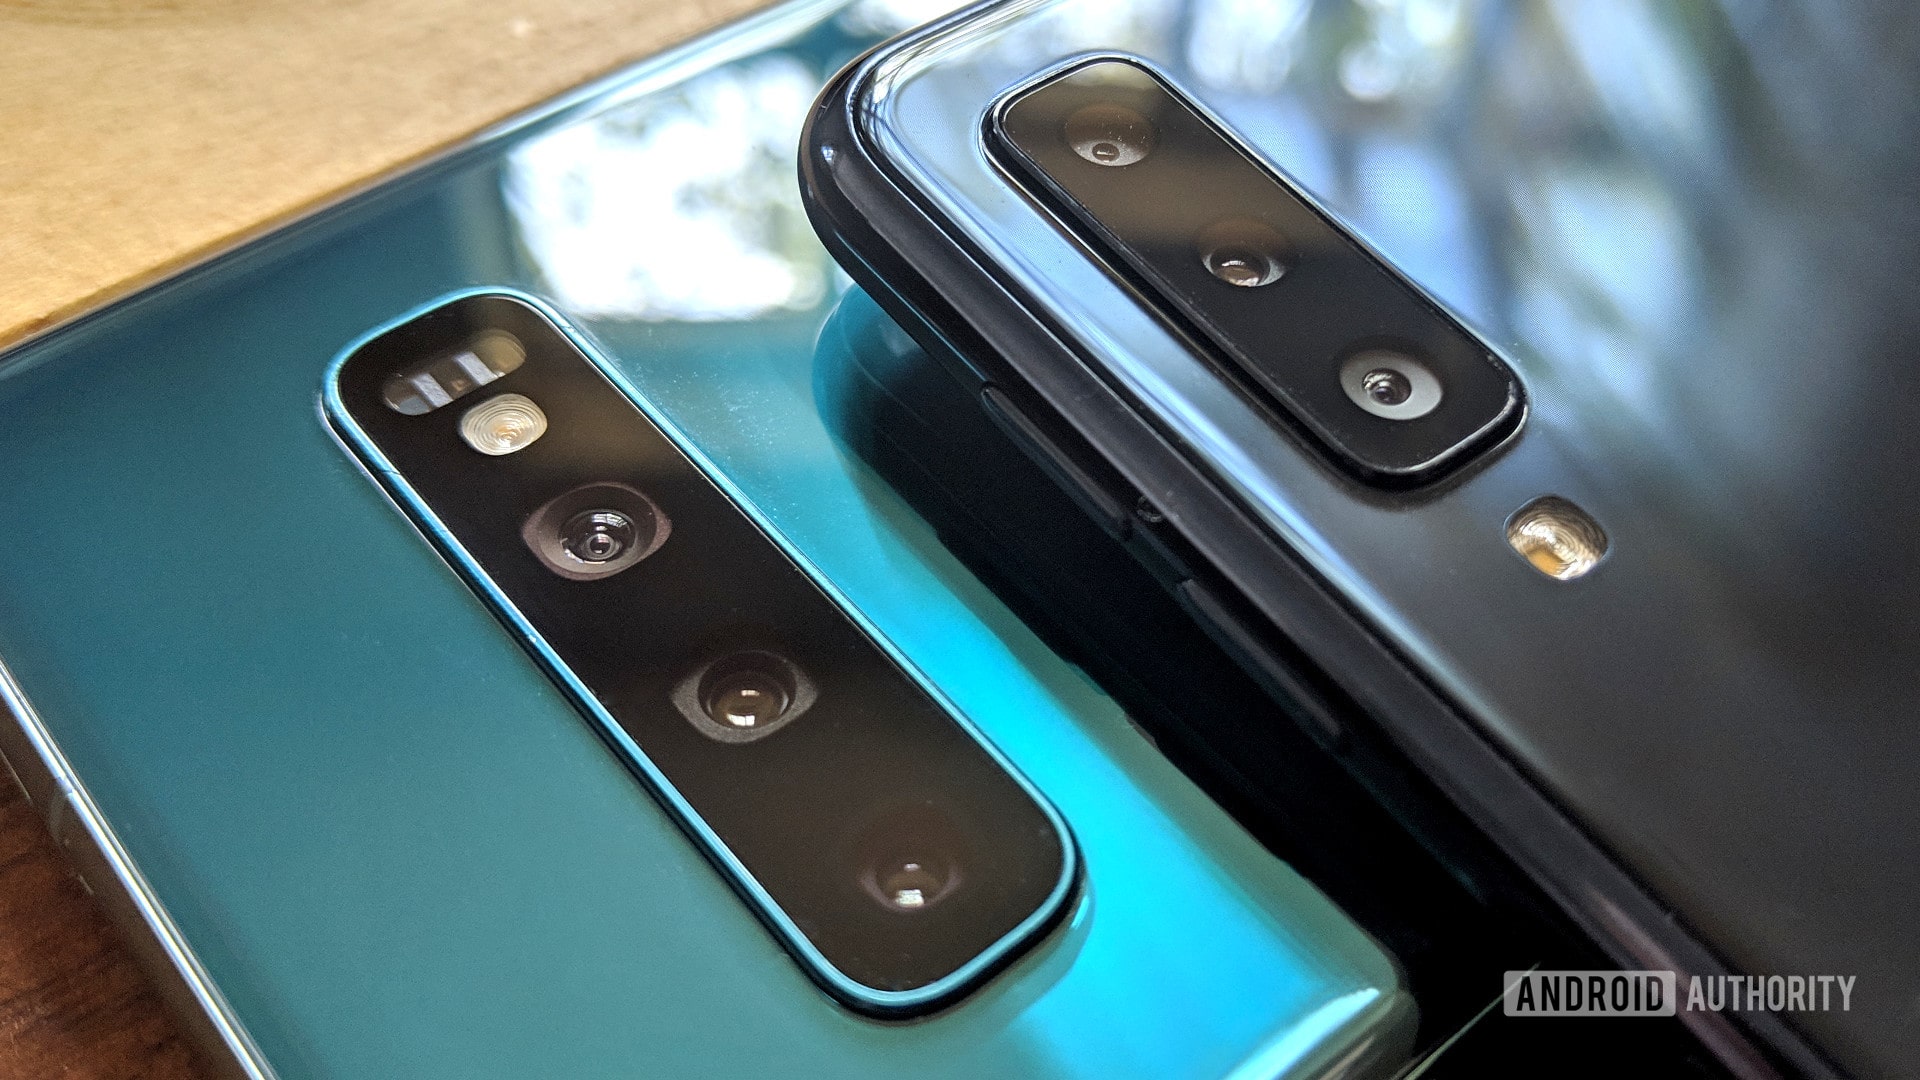 Samsung Galaxy S10 vs Galaxy A7 2018 rear cameras